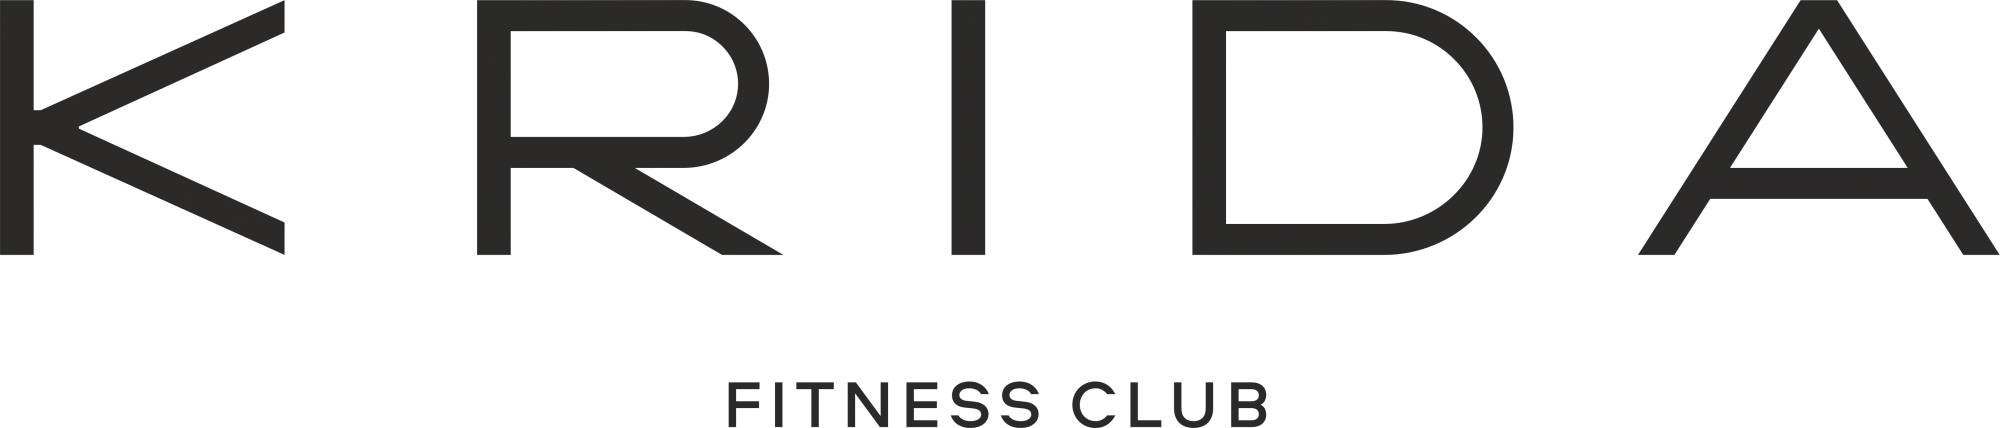 Krida fitness club